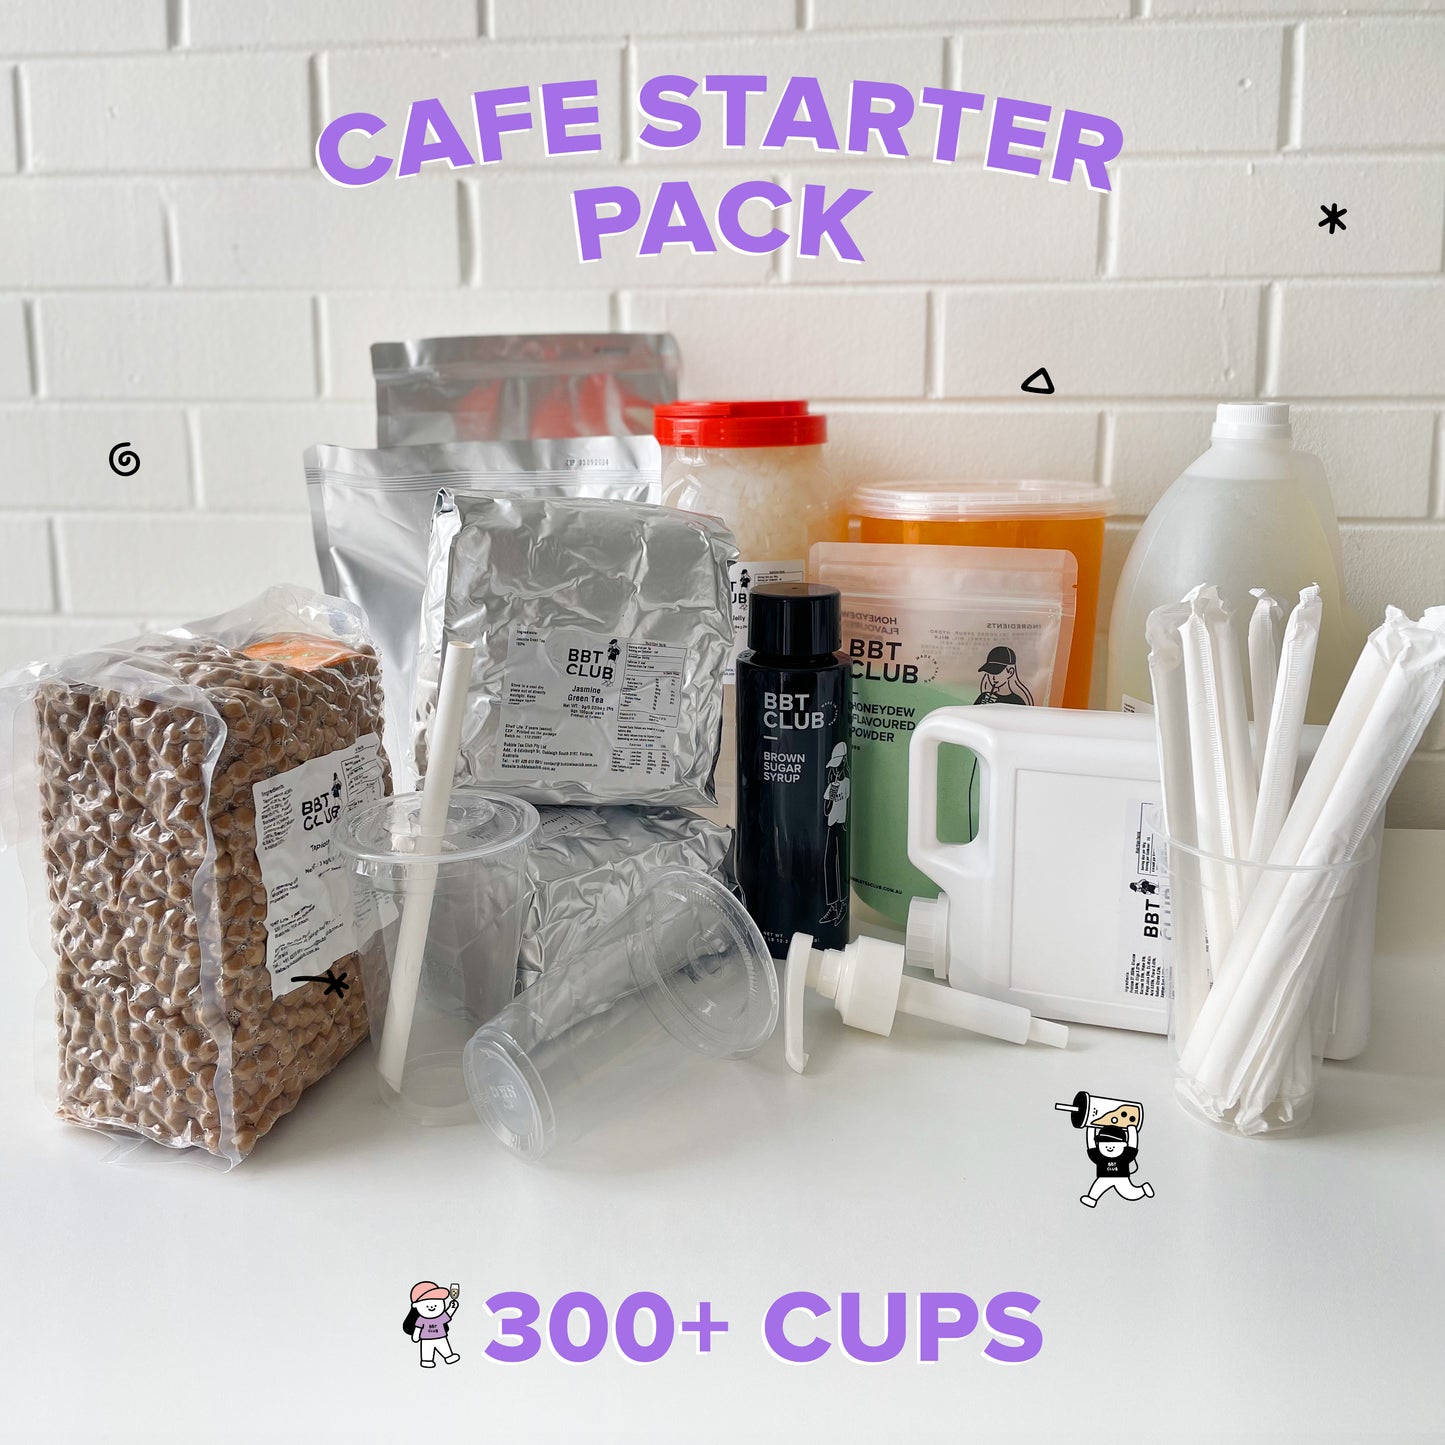 Cafe Starter Pack